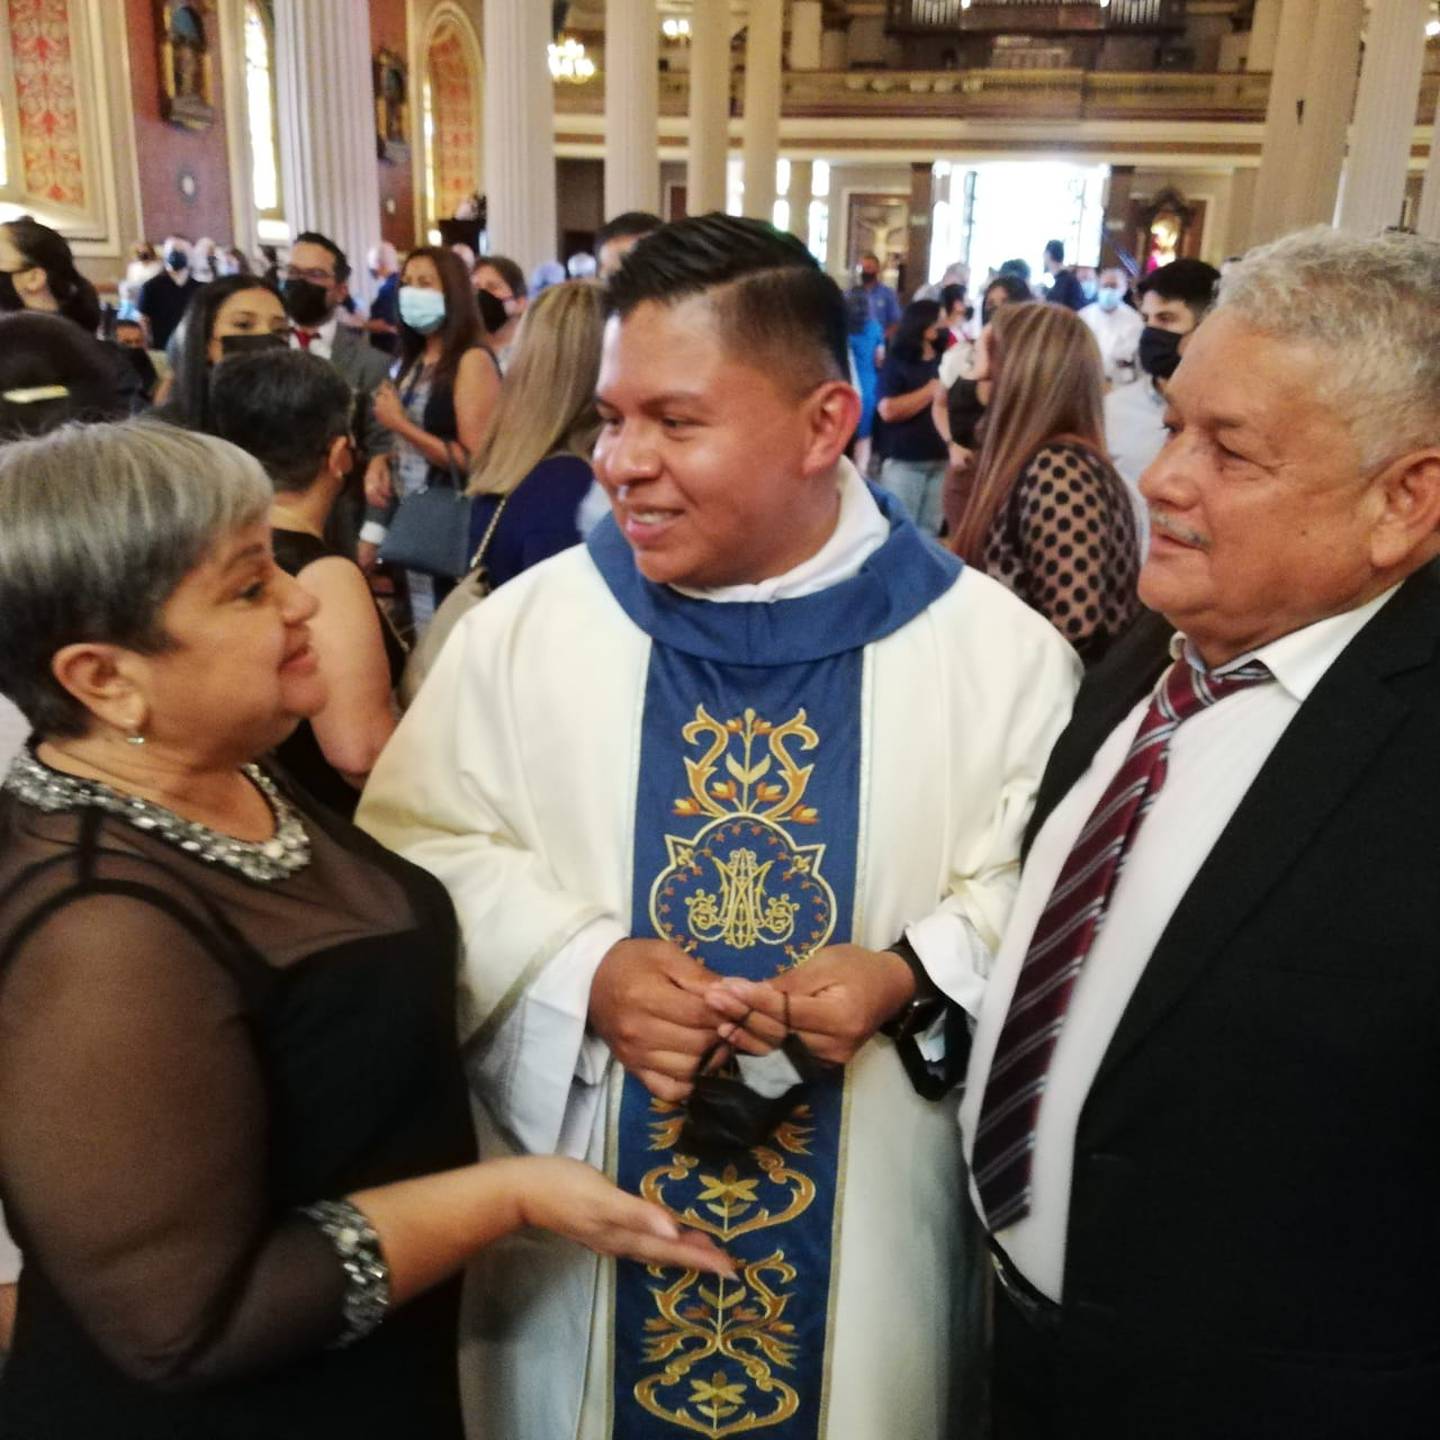 Siete nuevos sacerdotes fueron ordenados este miércoles 8 de diciembre en la catedral Metropolitana Santuario Nacional San José. En la foto el padre Pablo Daniel Morales Corrales conversa con su familia.